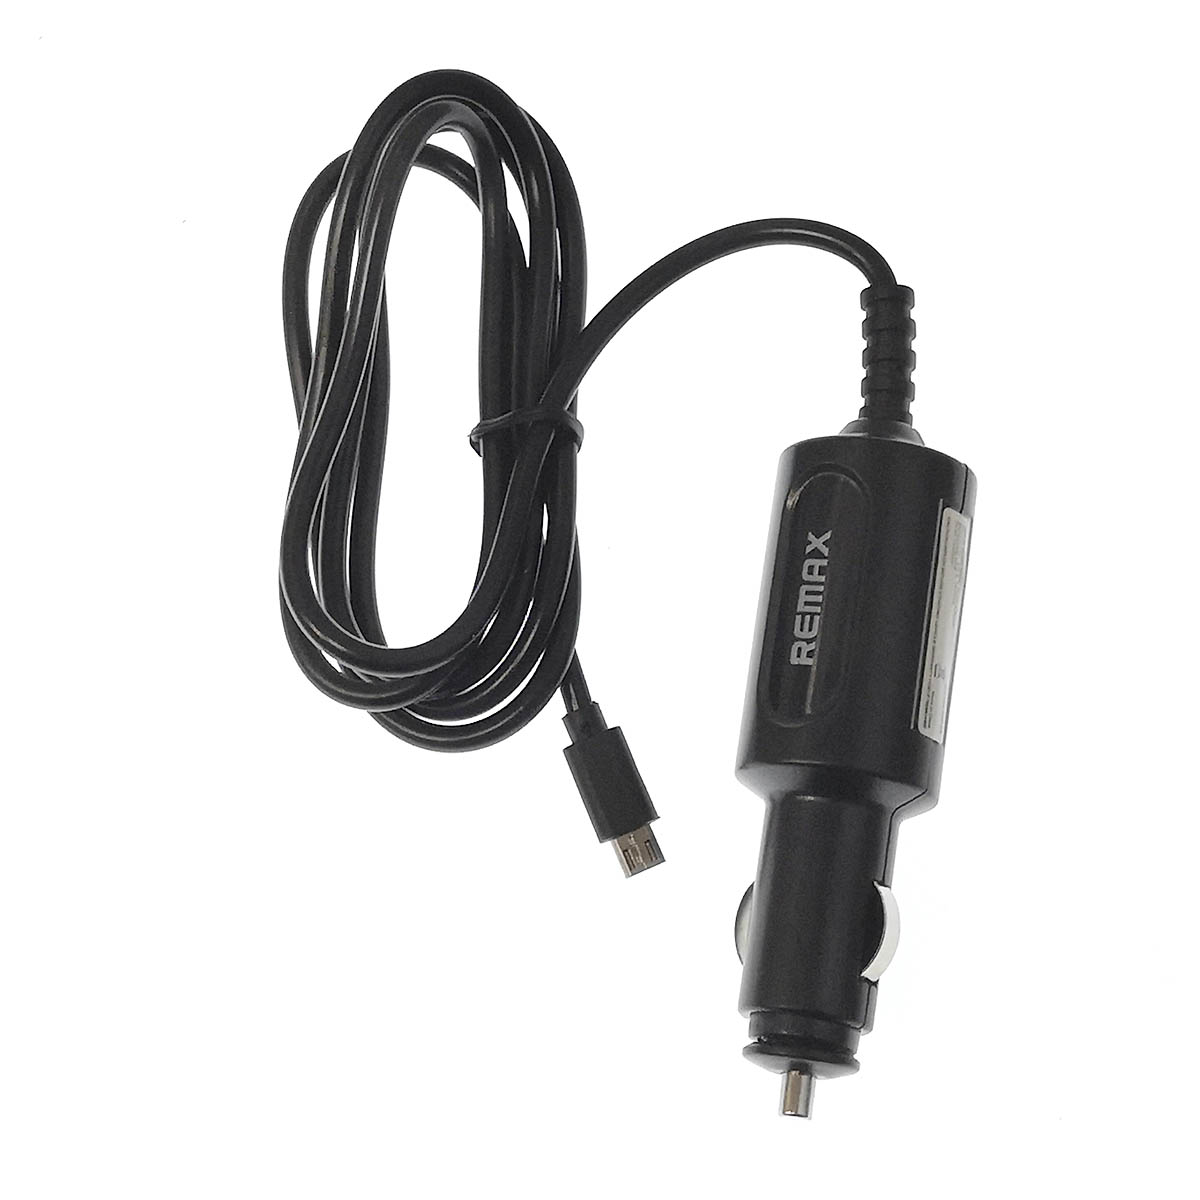 АЗУ (Автомобильное зарядное устройство) REMAX CA-053-00D-09 со встроенным кабелем Micro USB, длина 1.2 метра, цвет черный